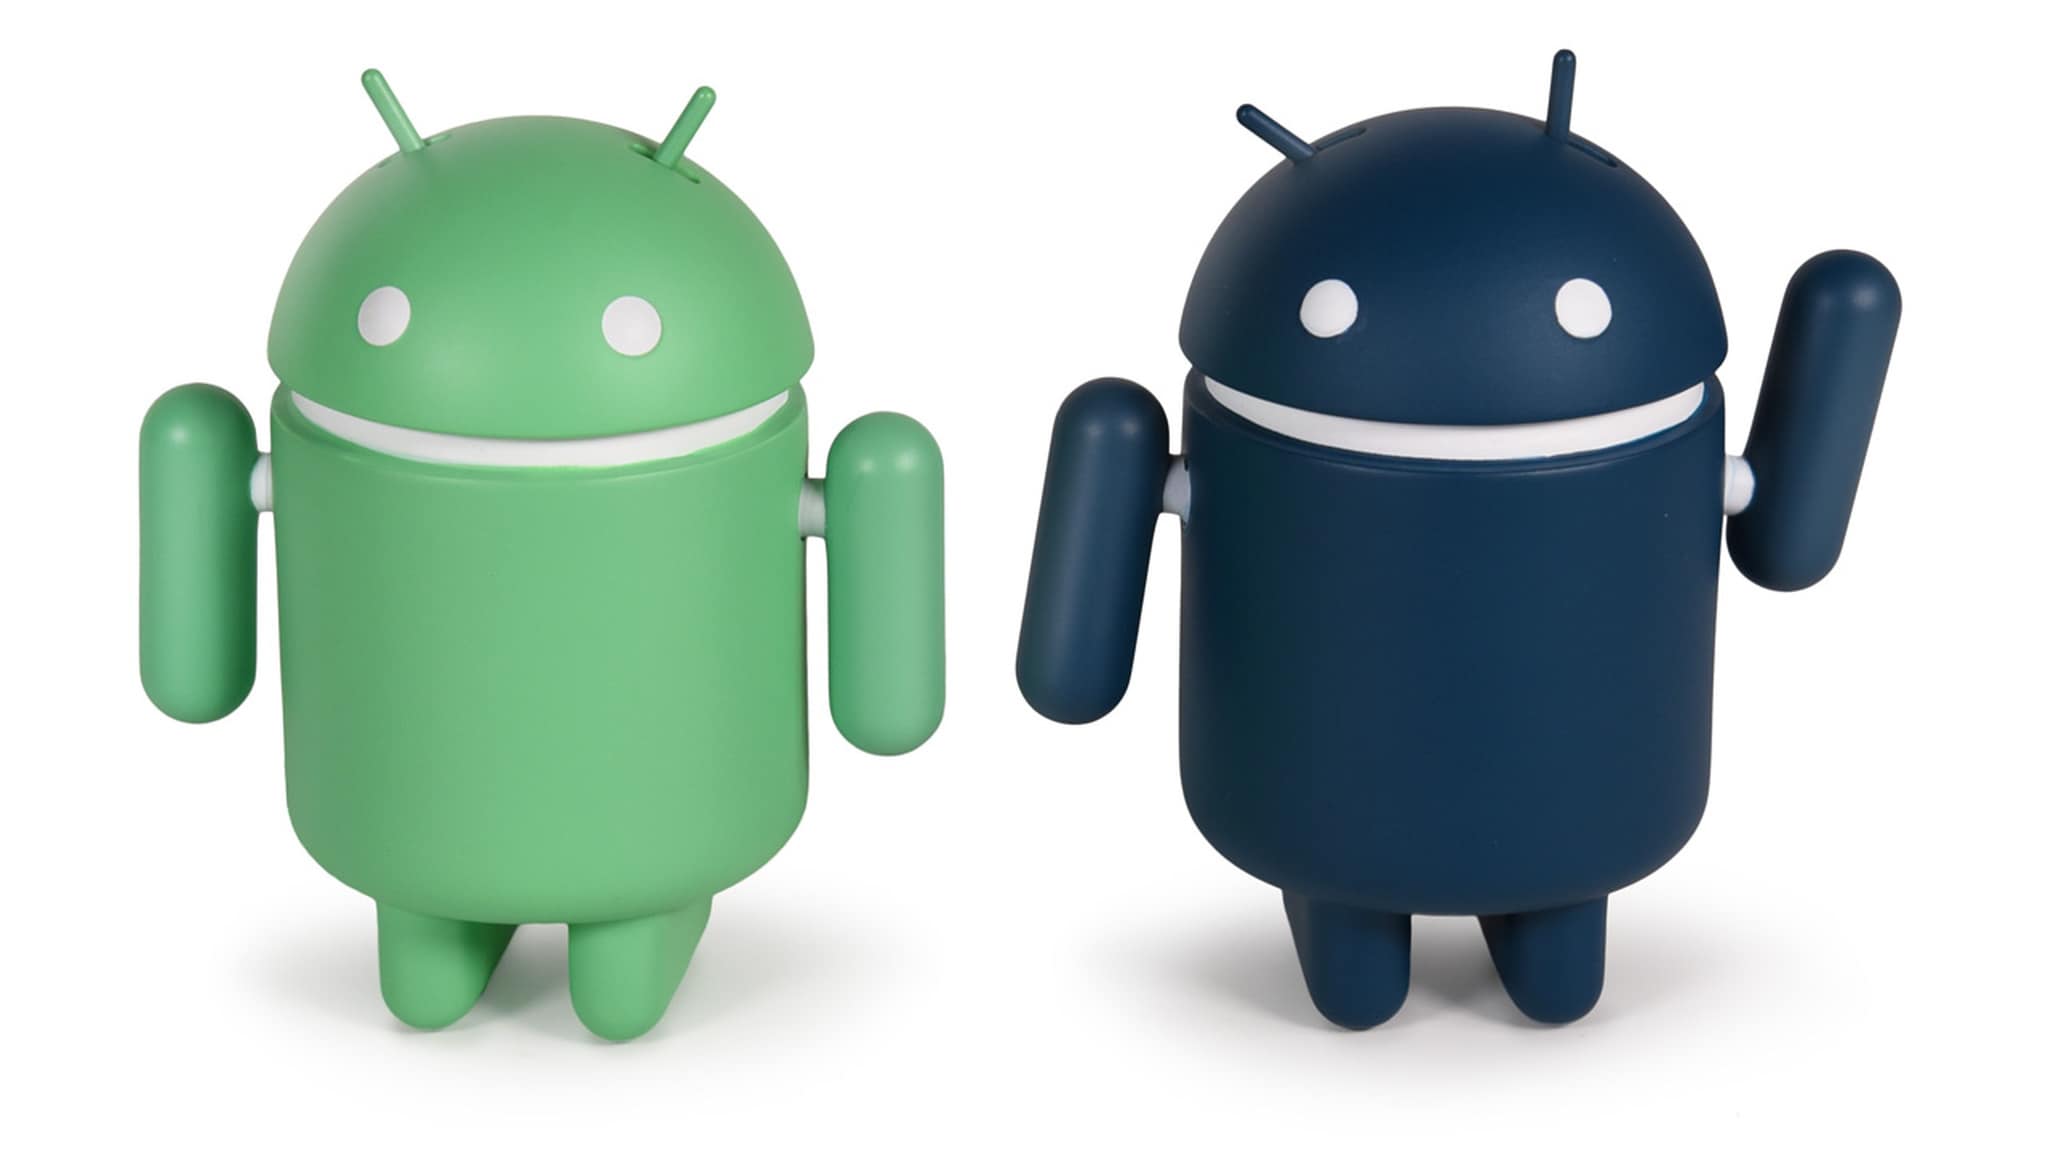 Anche i collezionabili Android guadagnano il tema scuro e diventano più espressivi di sempre